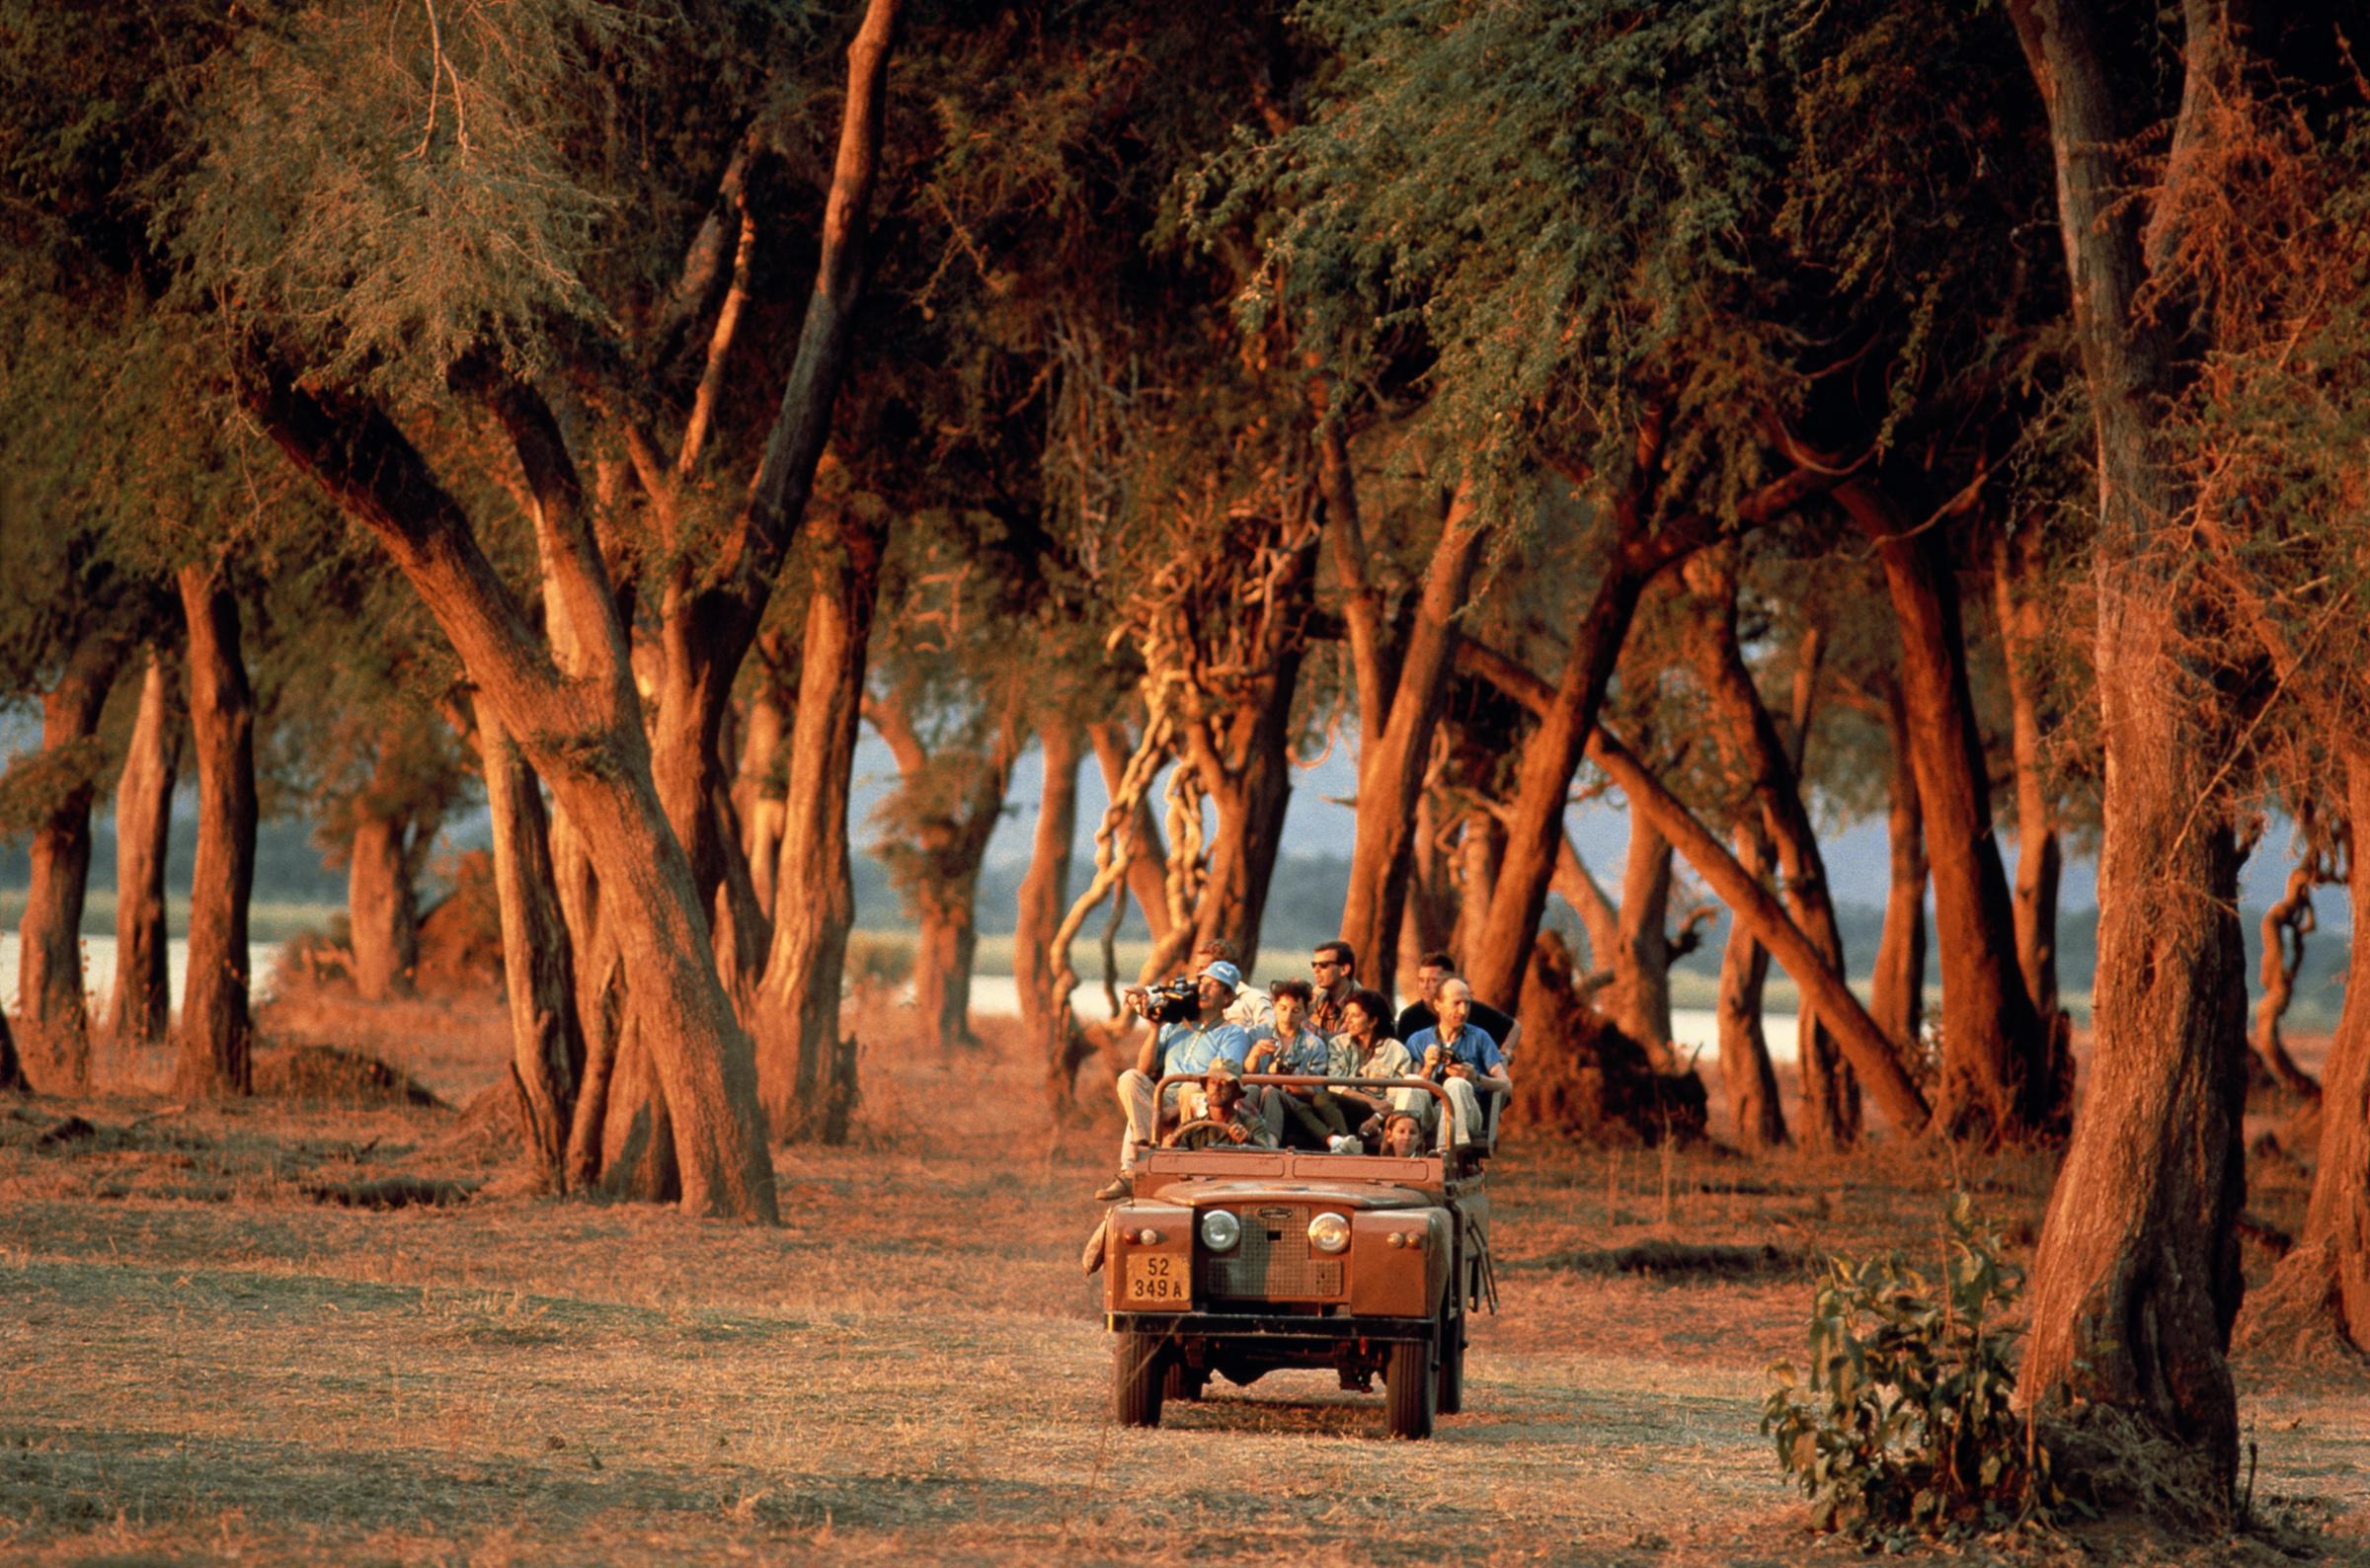 Zimbabwe, Zambezi flood plains, tourists in safari vehicle